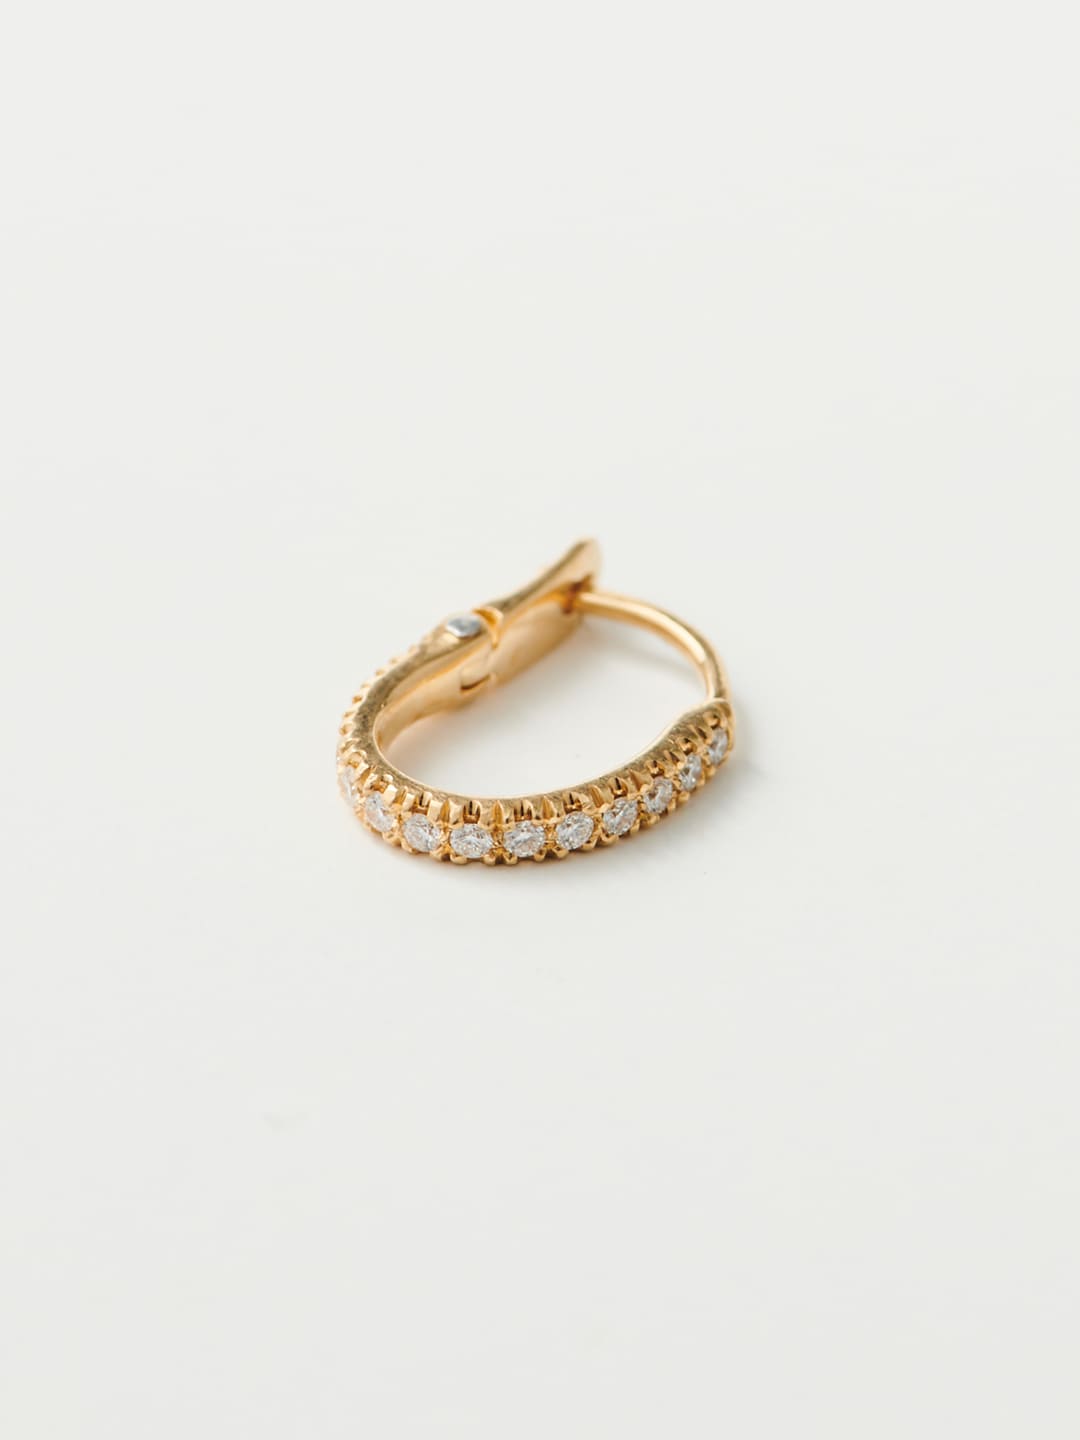 Marvelous Pierced Earring / Diamond Hook - Yellow Gold